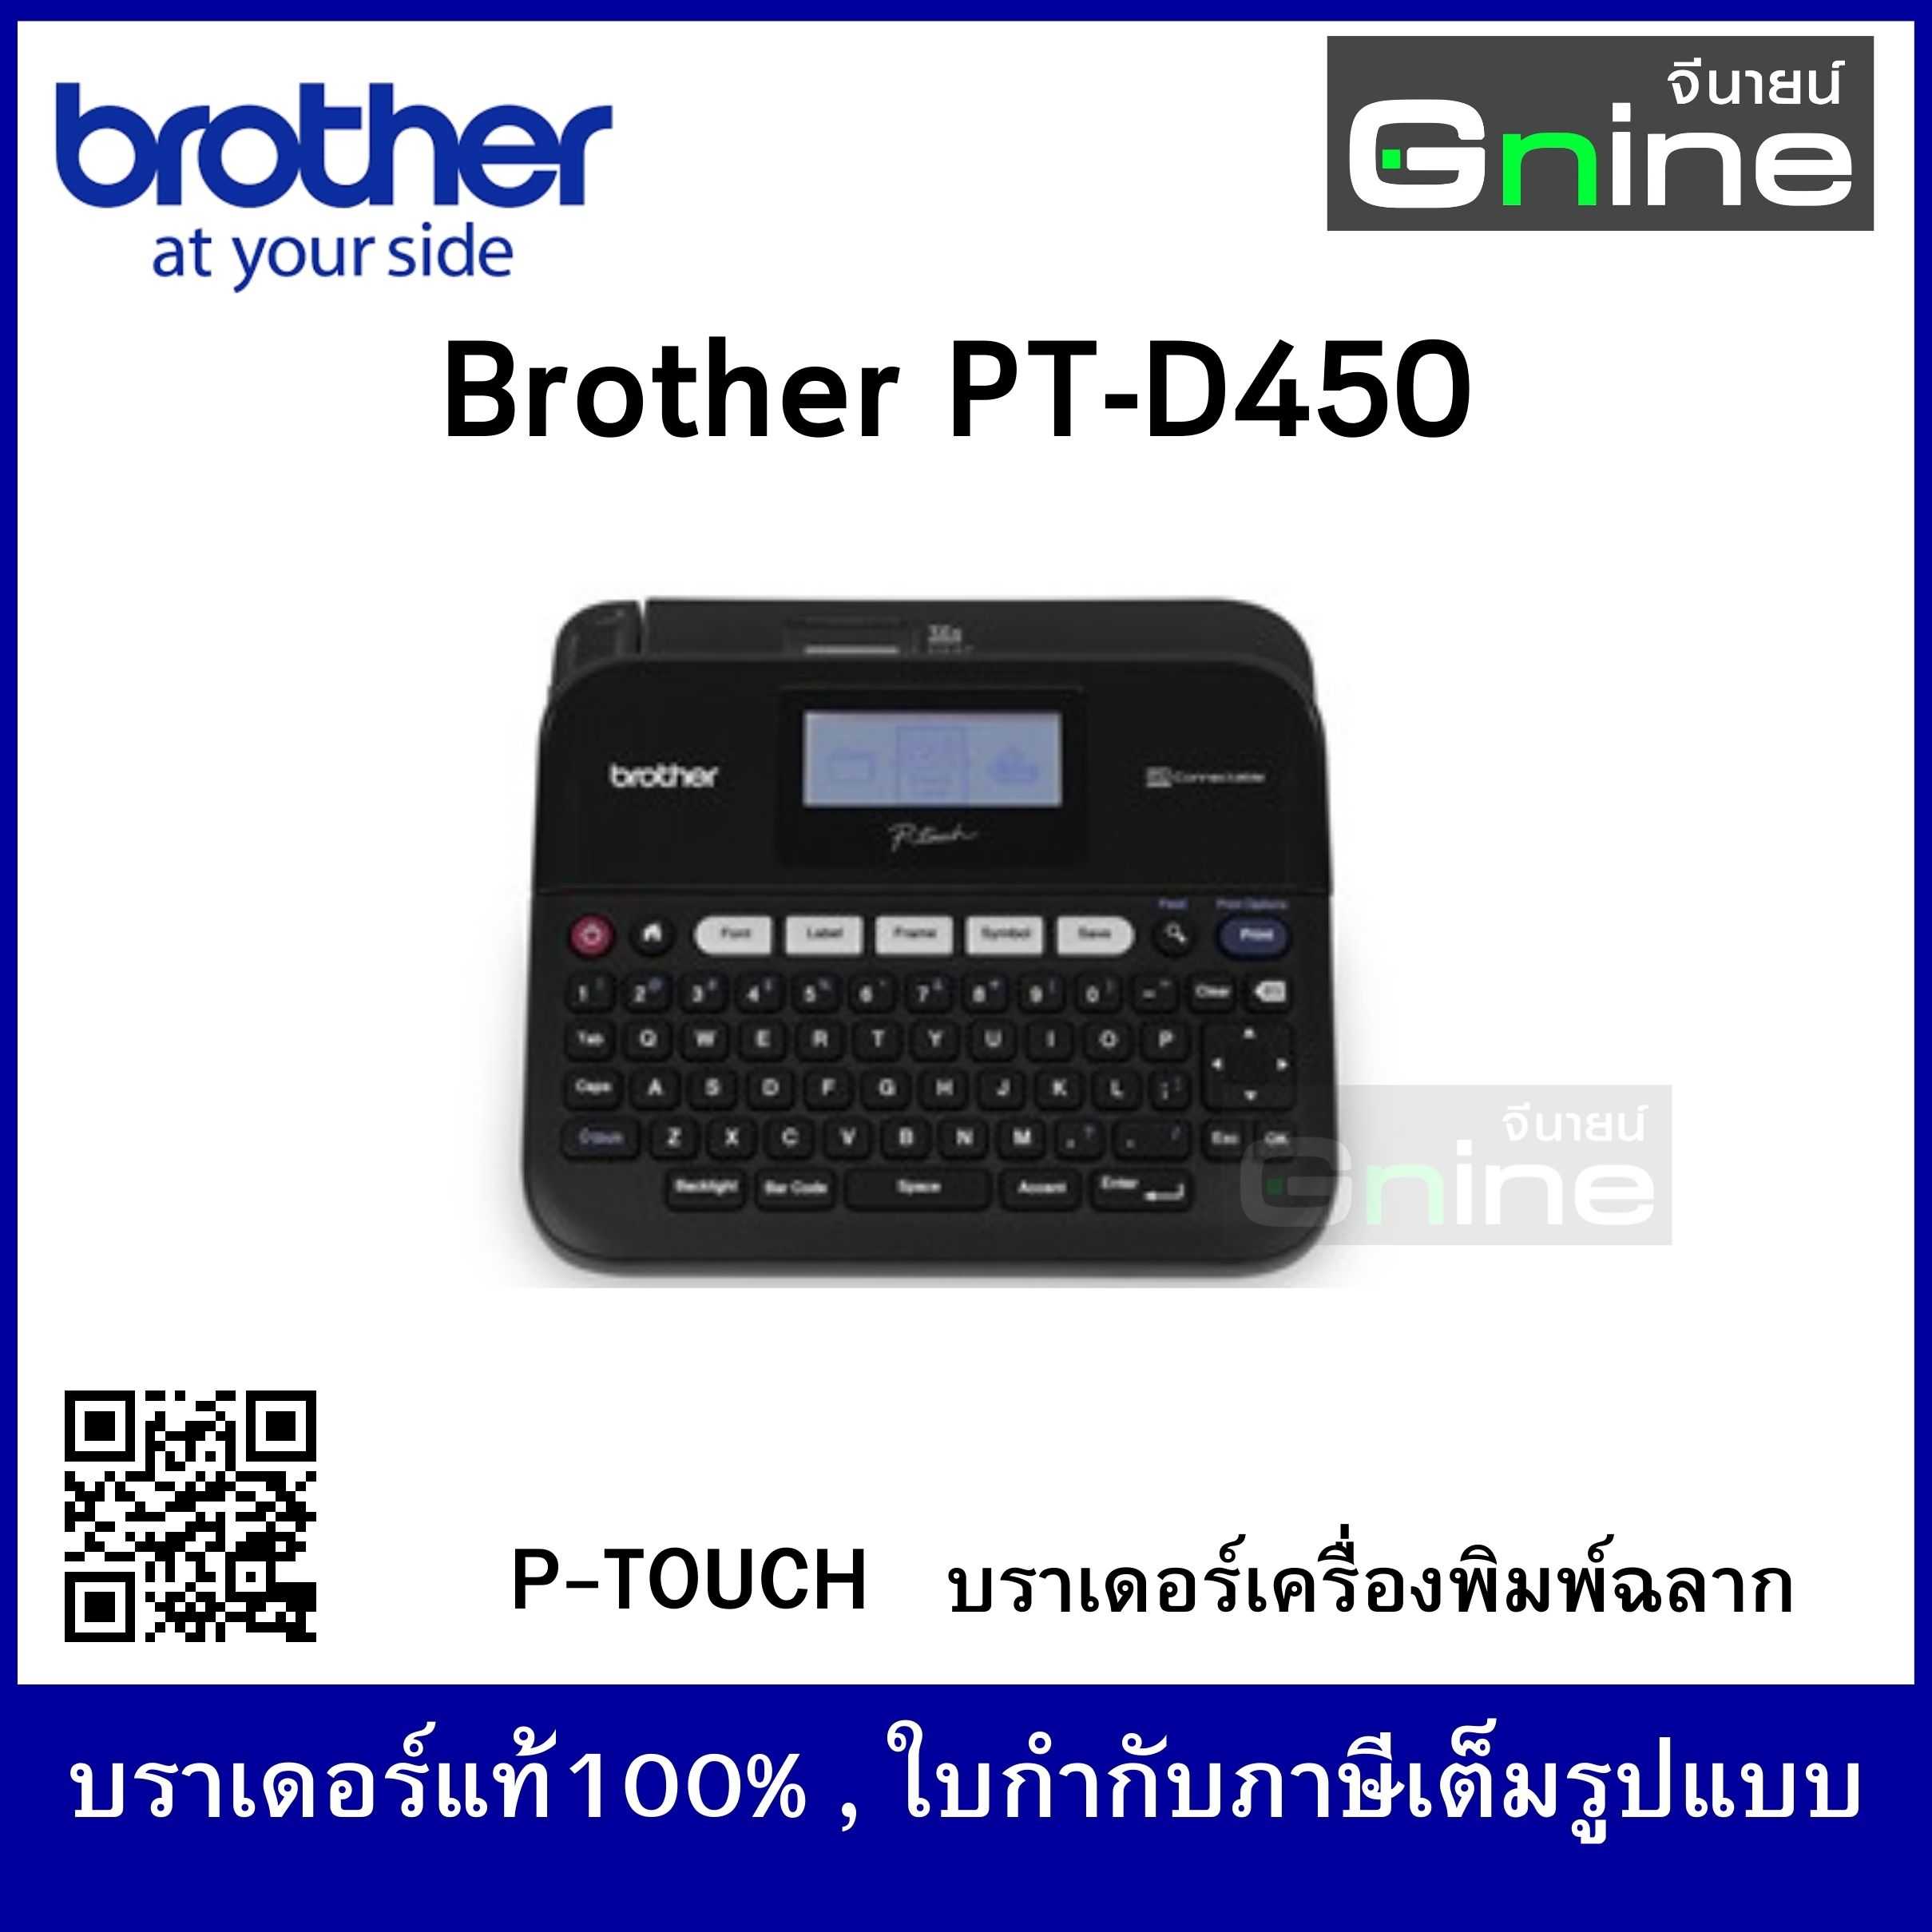 Brother P-TOUCH รุ่น PT-D460BT ( เครื่องพิมพ์ฉลาก บราเดอร์ พีทัช)